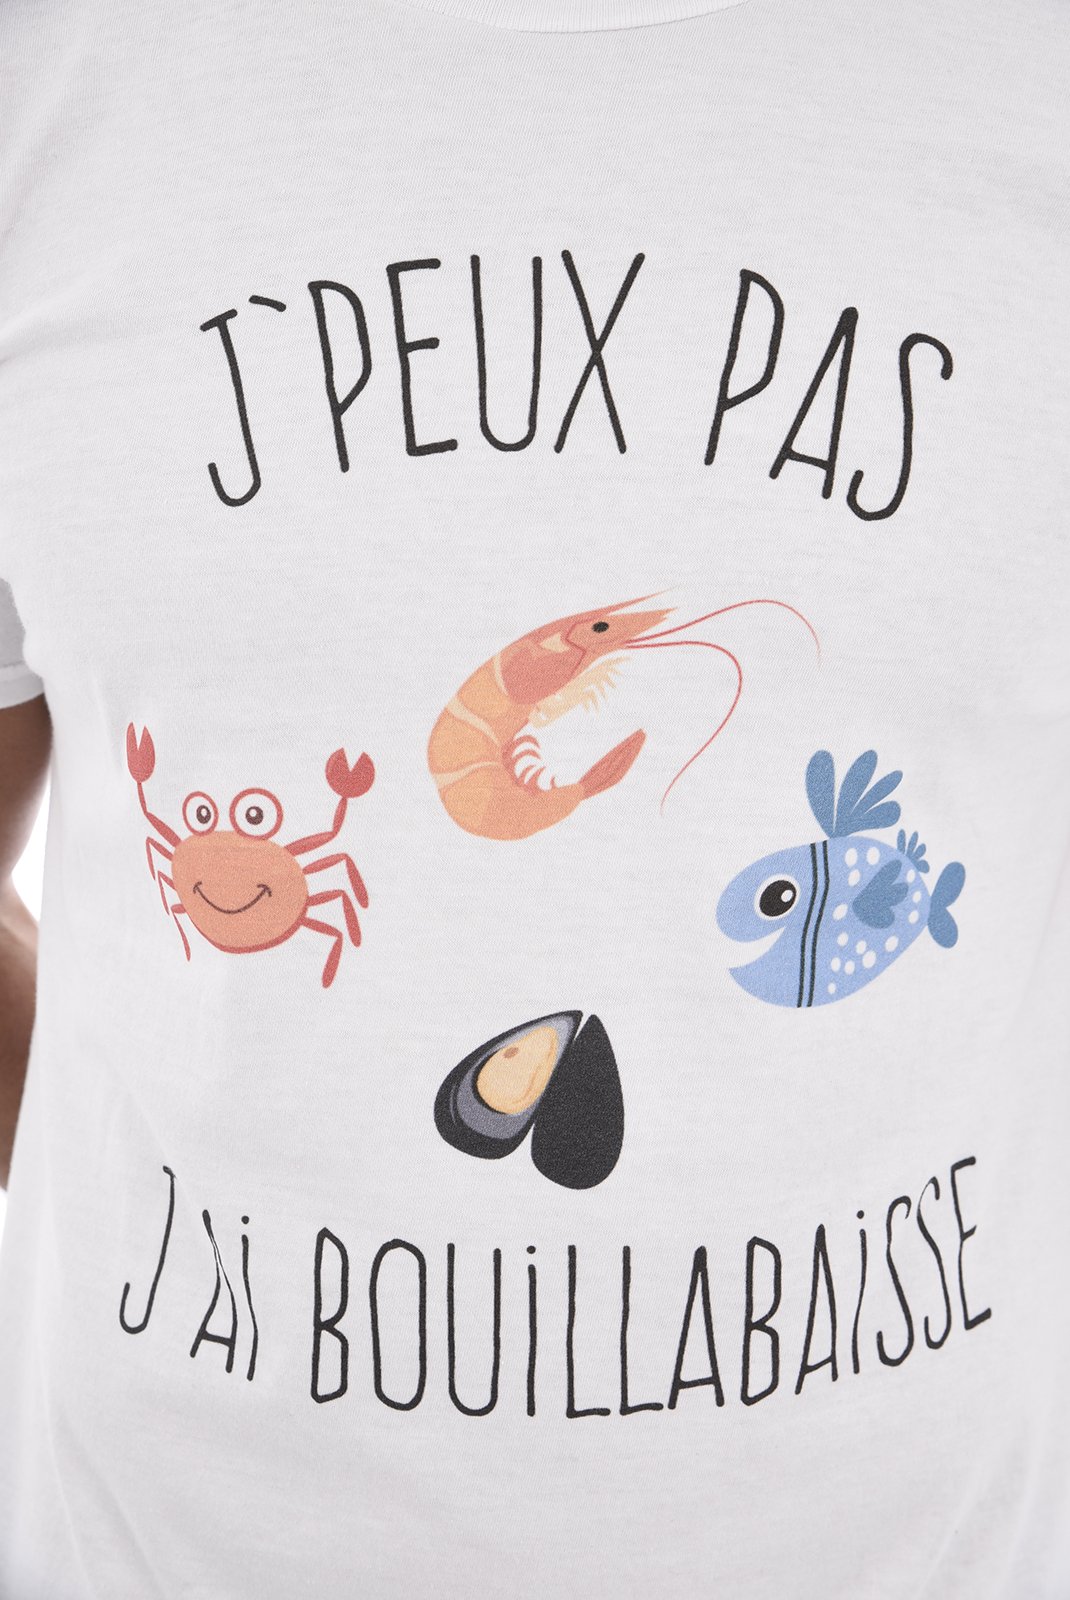 Tee-shirts  Les Tricolores J'PEUX PAS J'AI BOUILLABAISSE BLANC